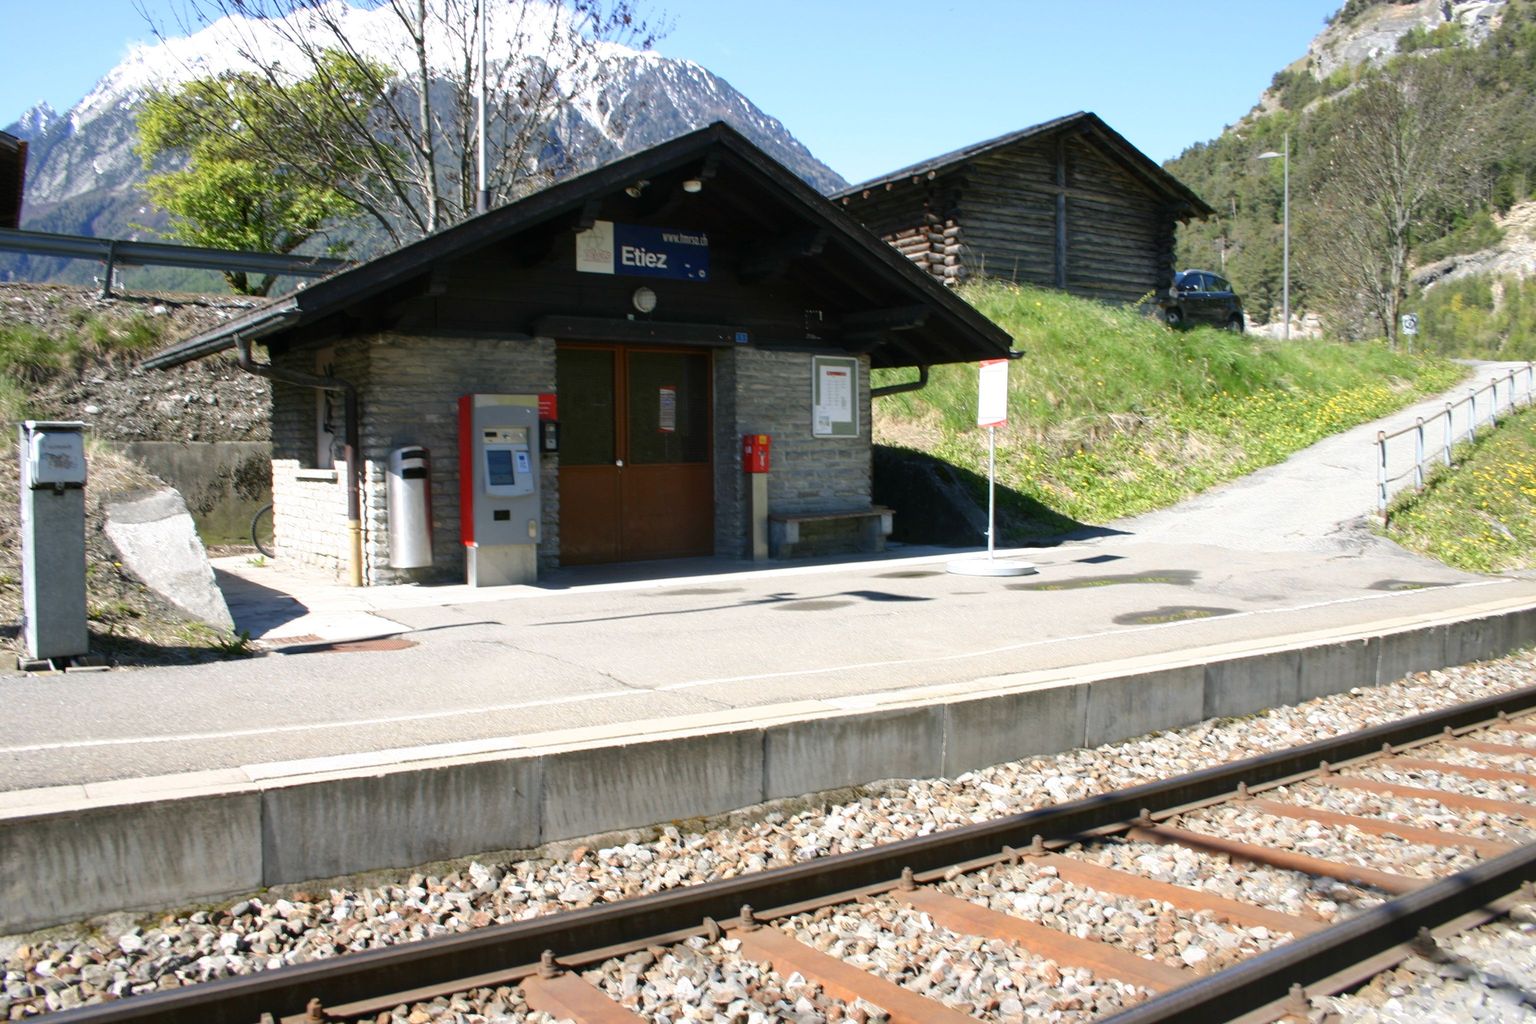 La direction de TMR SA est catégorique: il sera toujours possible de faire arrêter une fois par heure un convoi du Saint-Bernard Express en gare d'Etiez.